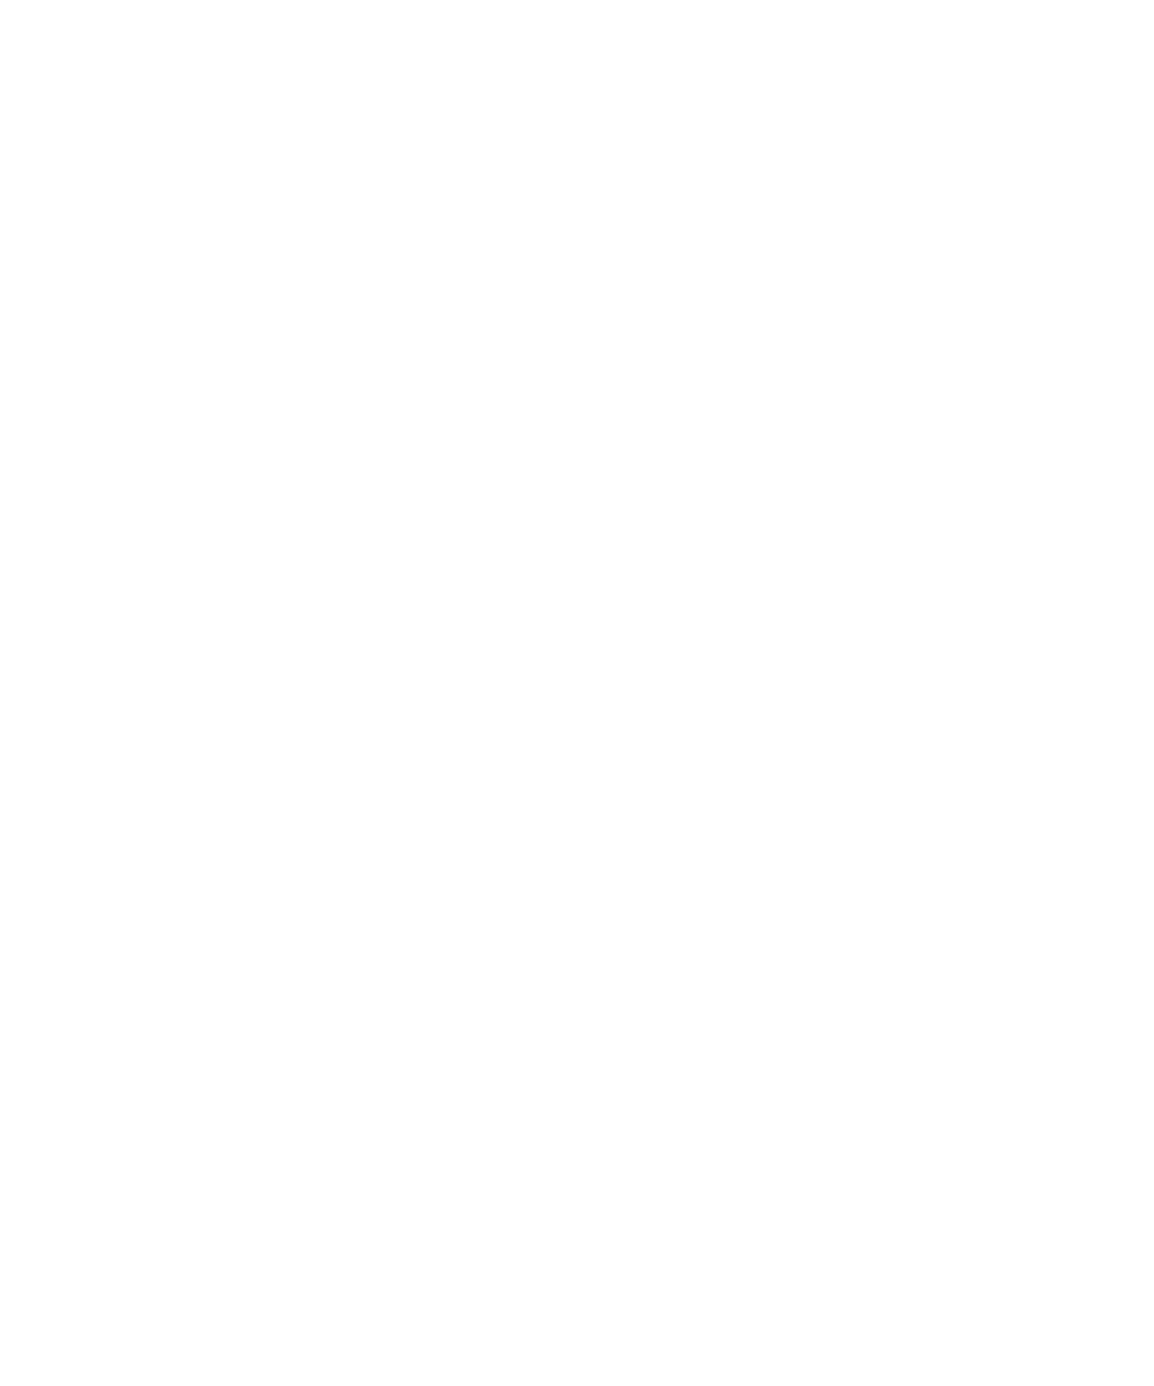 Mississippi Soccer Association